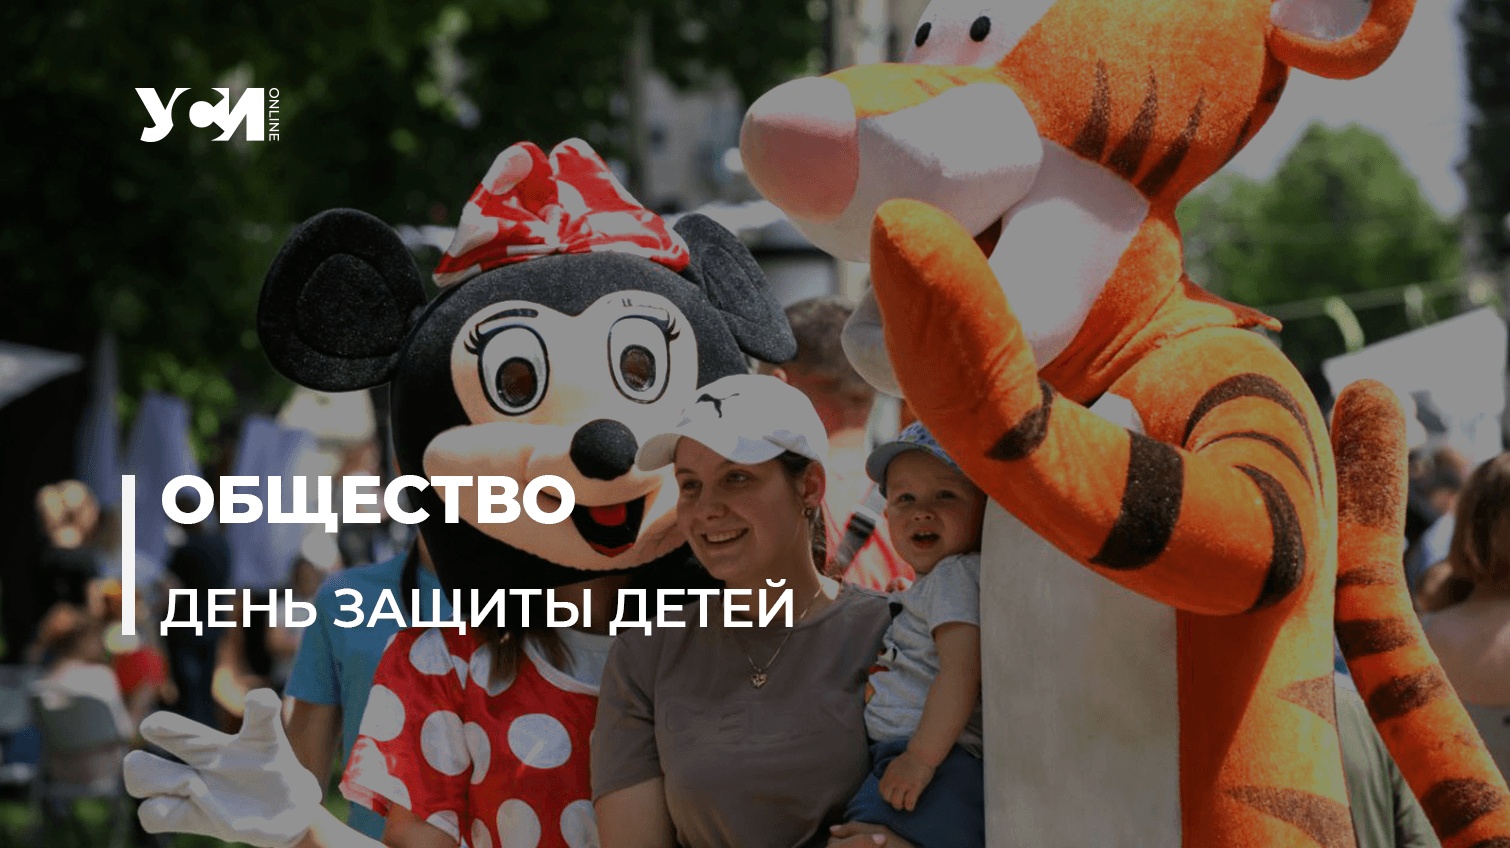 Лепка из мастики, игры и конкурсы: одесские волонтеры устроили праздник для детей (фото, аудио) «фото»